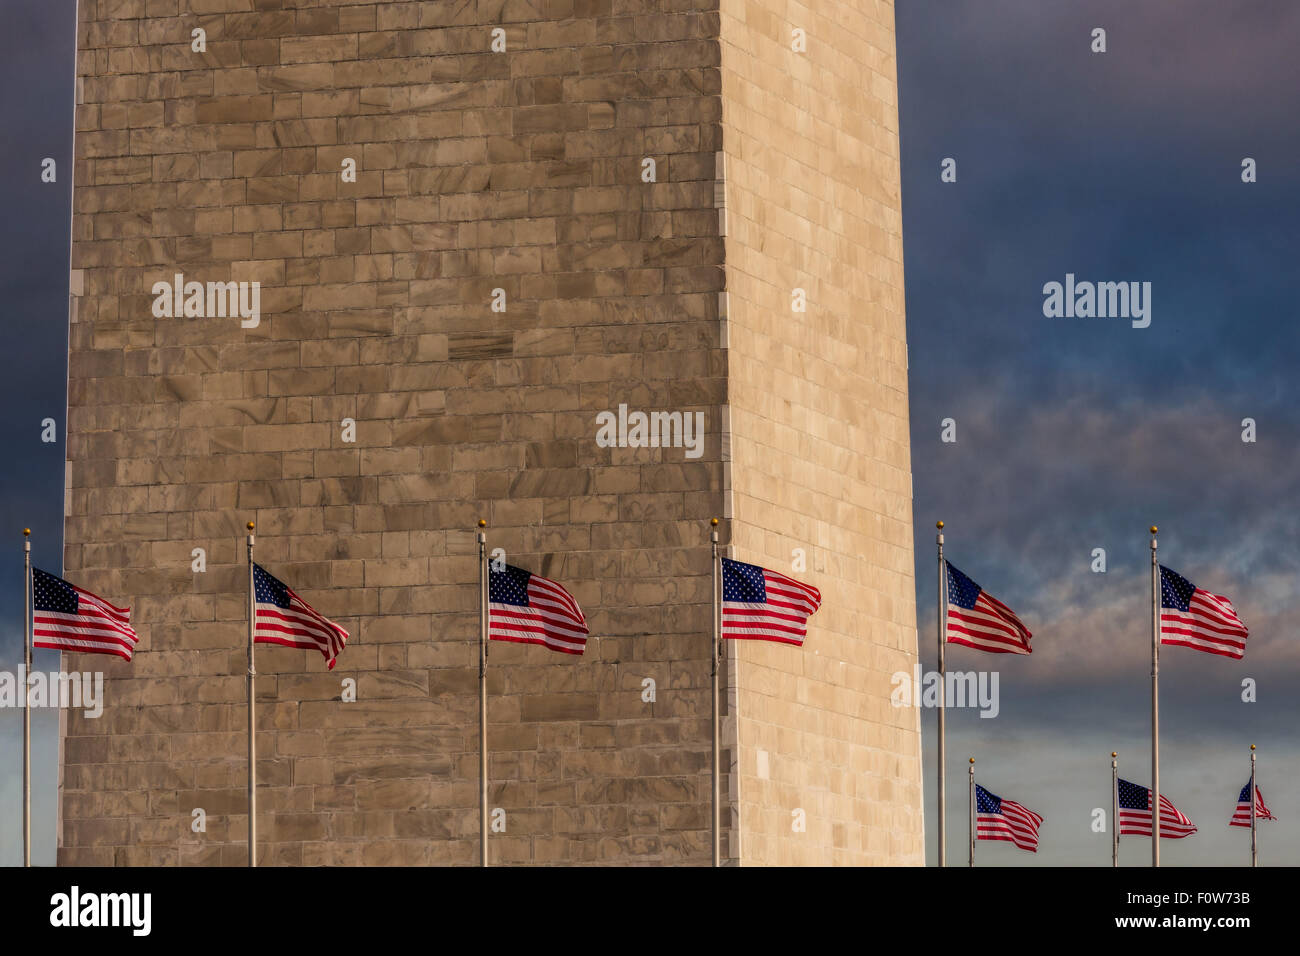 Schließen Sie die Ansicht des unteren Teils des Washington Monuments mit den Vereinigten Staaten von Amerika Flaggen, die rund um das Denkmal. Stockfoto